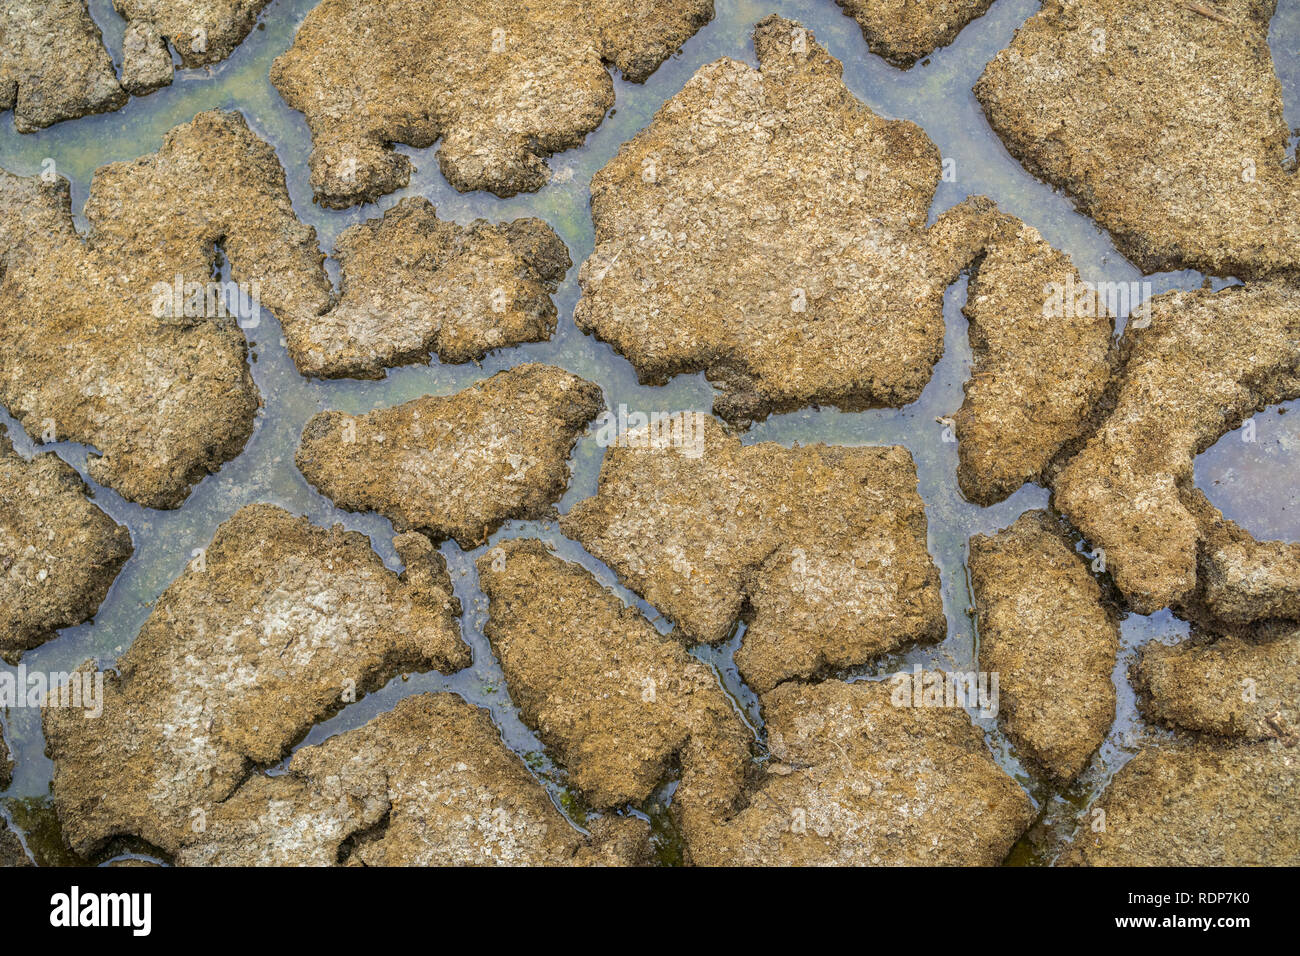 Dried mud, Alviso marsh, south San Francisco bay, California Stock Photo